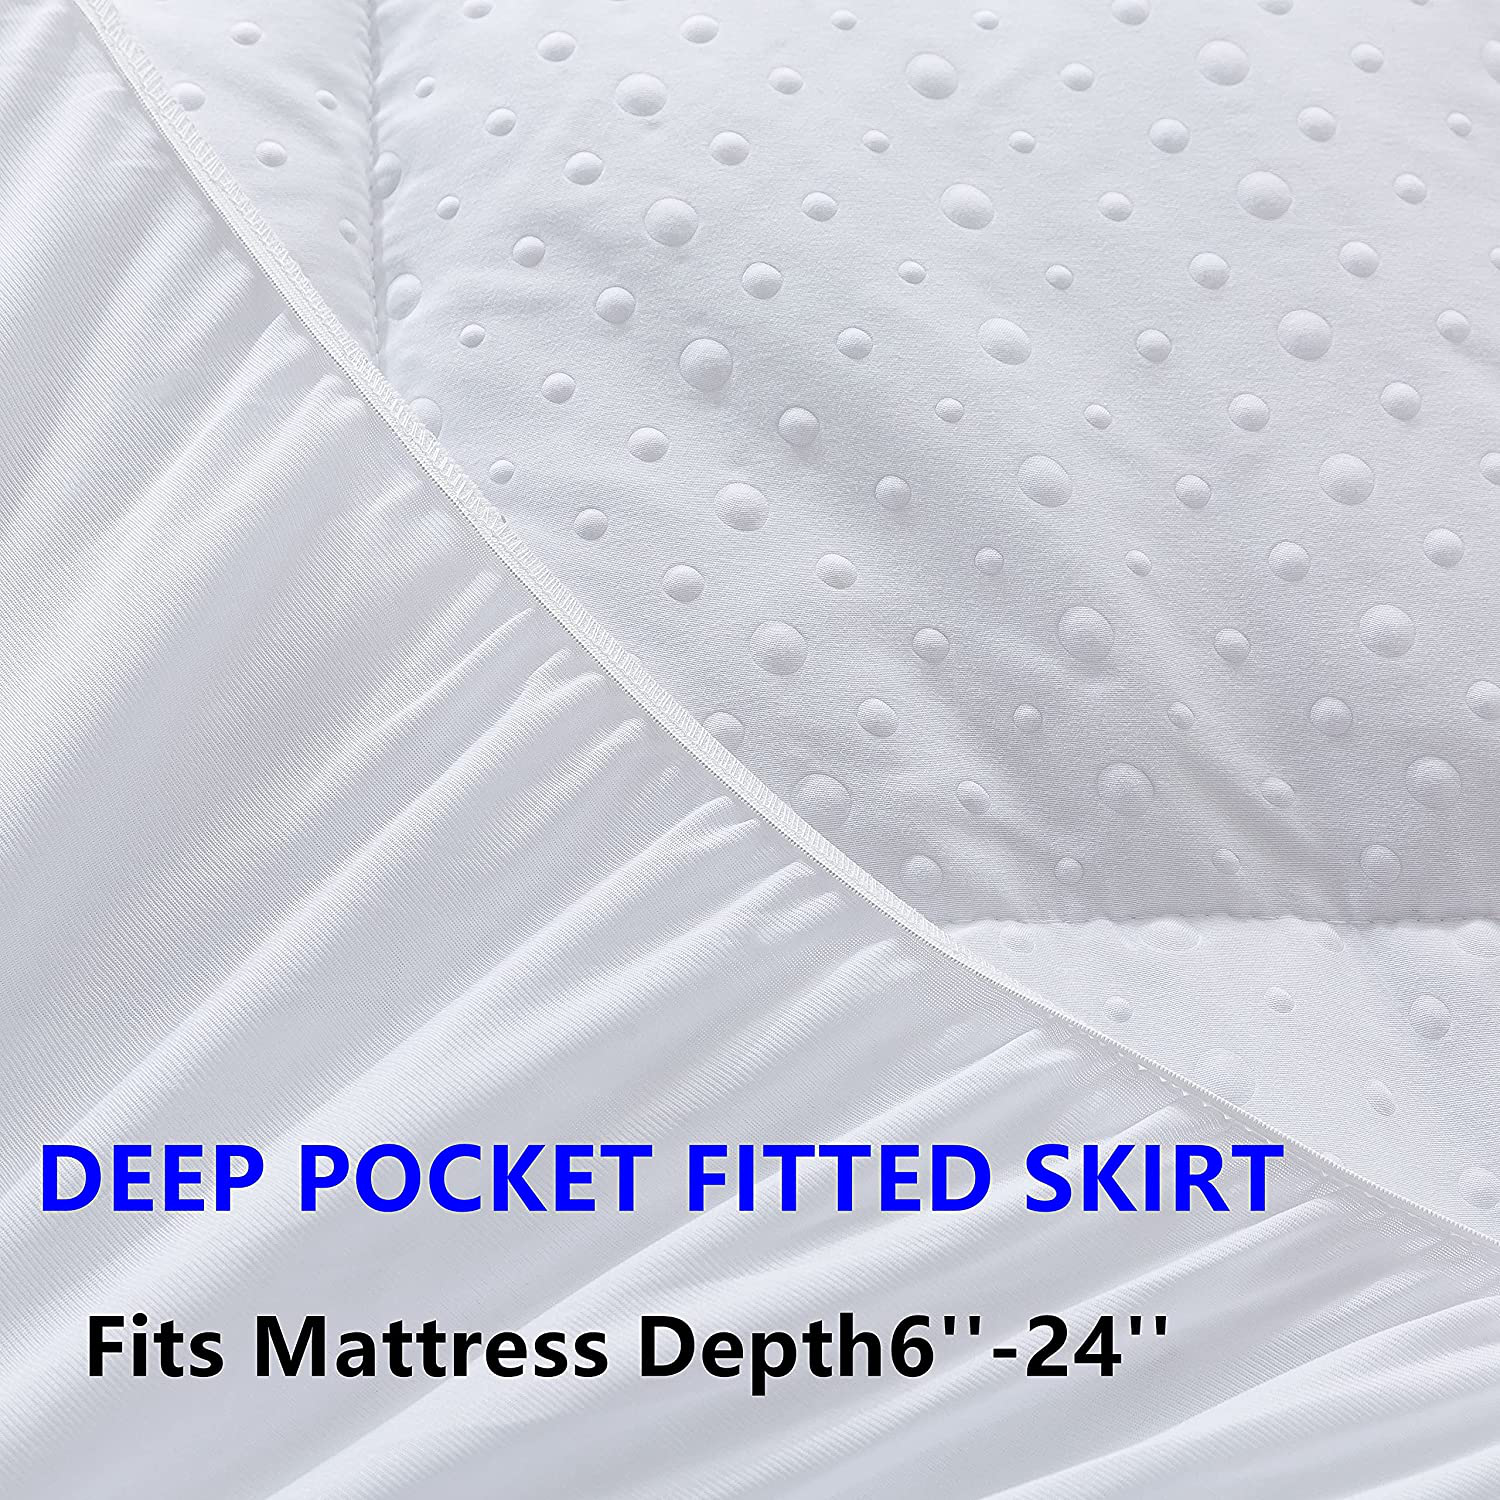 Mattress Pad Pillow Top Mattress Cover Quilted Fitted Mattress Protector 6-24" Deep Pocket Cooling Mattress Topper(Queen Size)